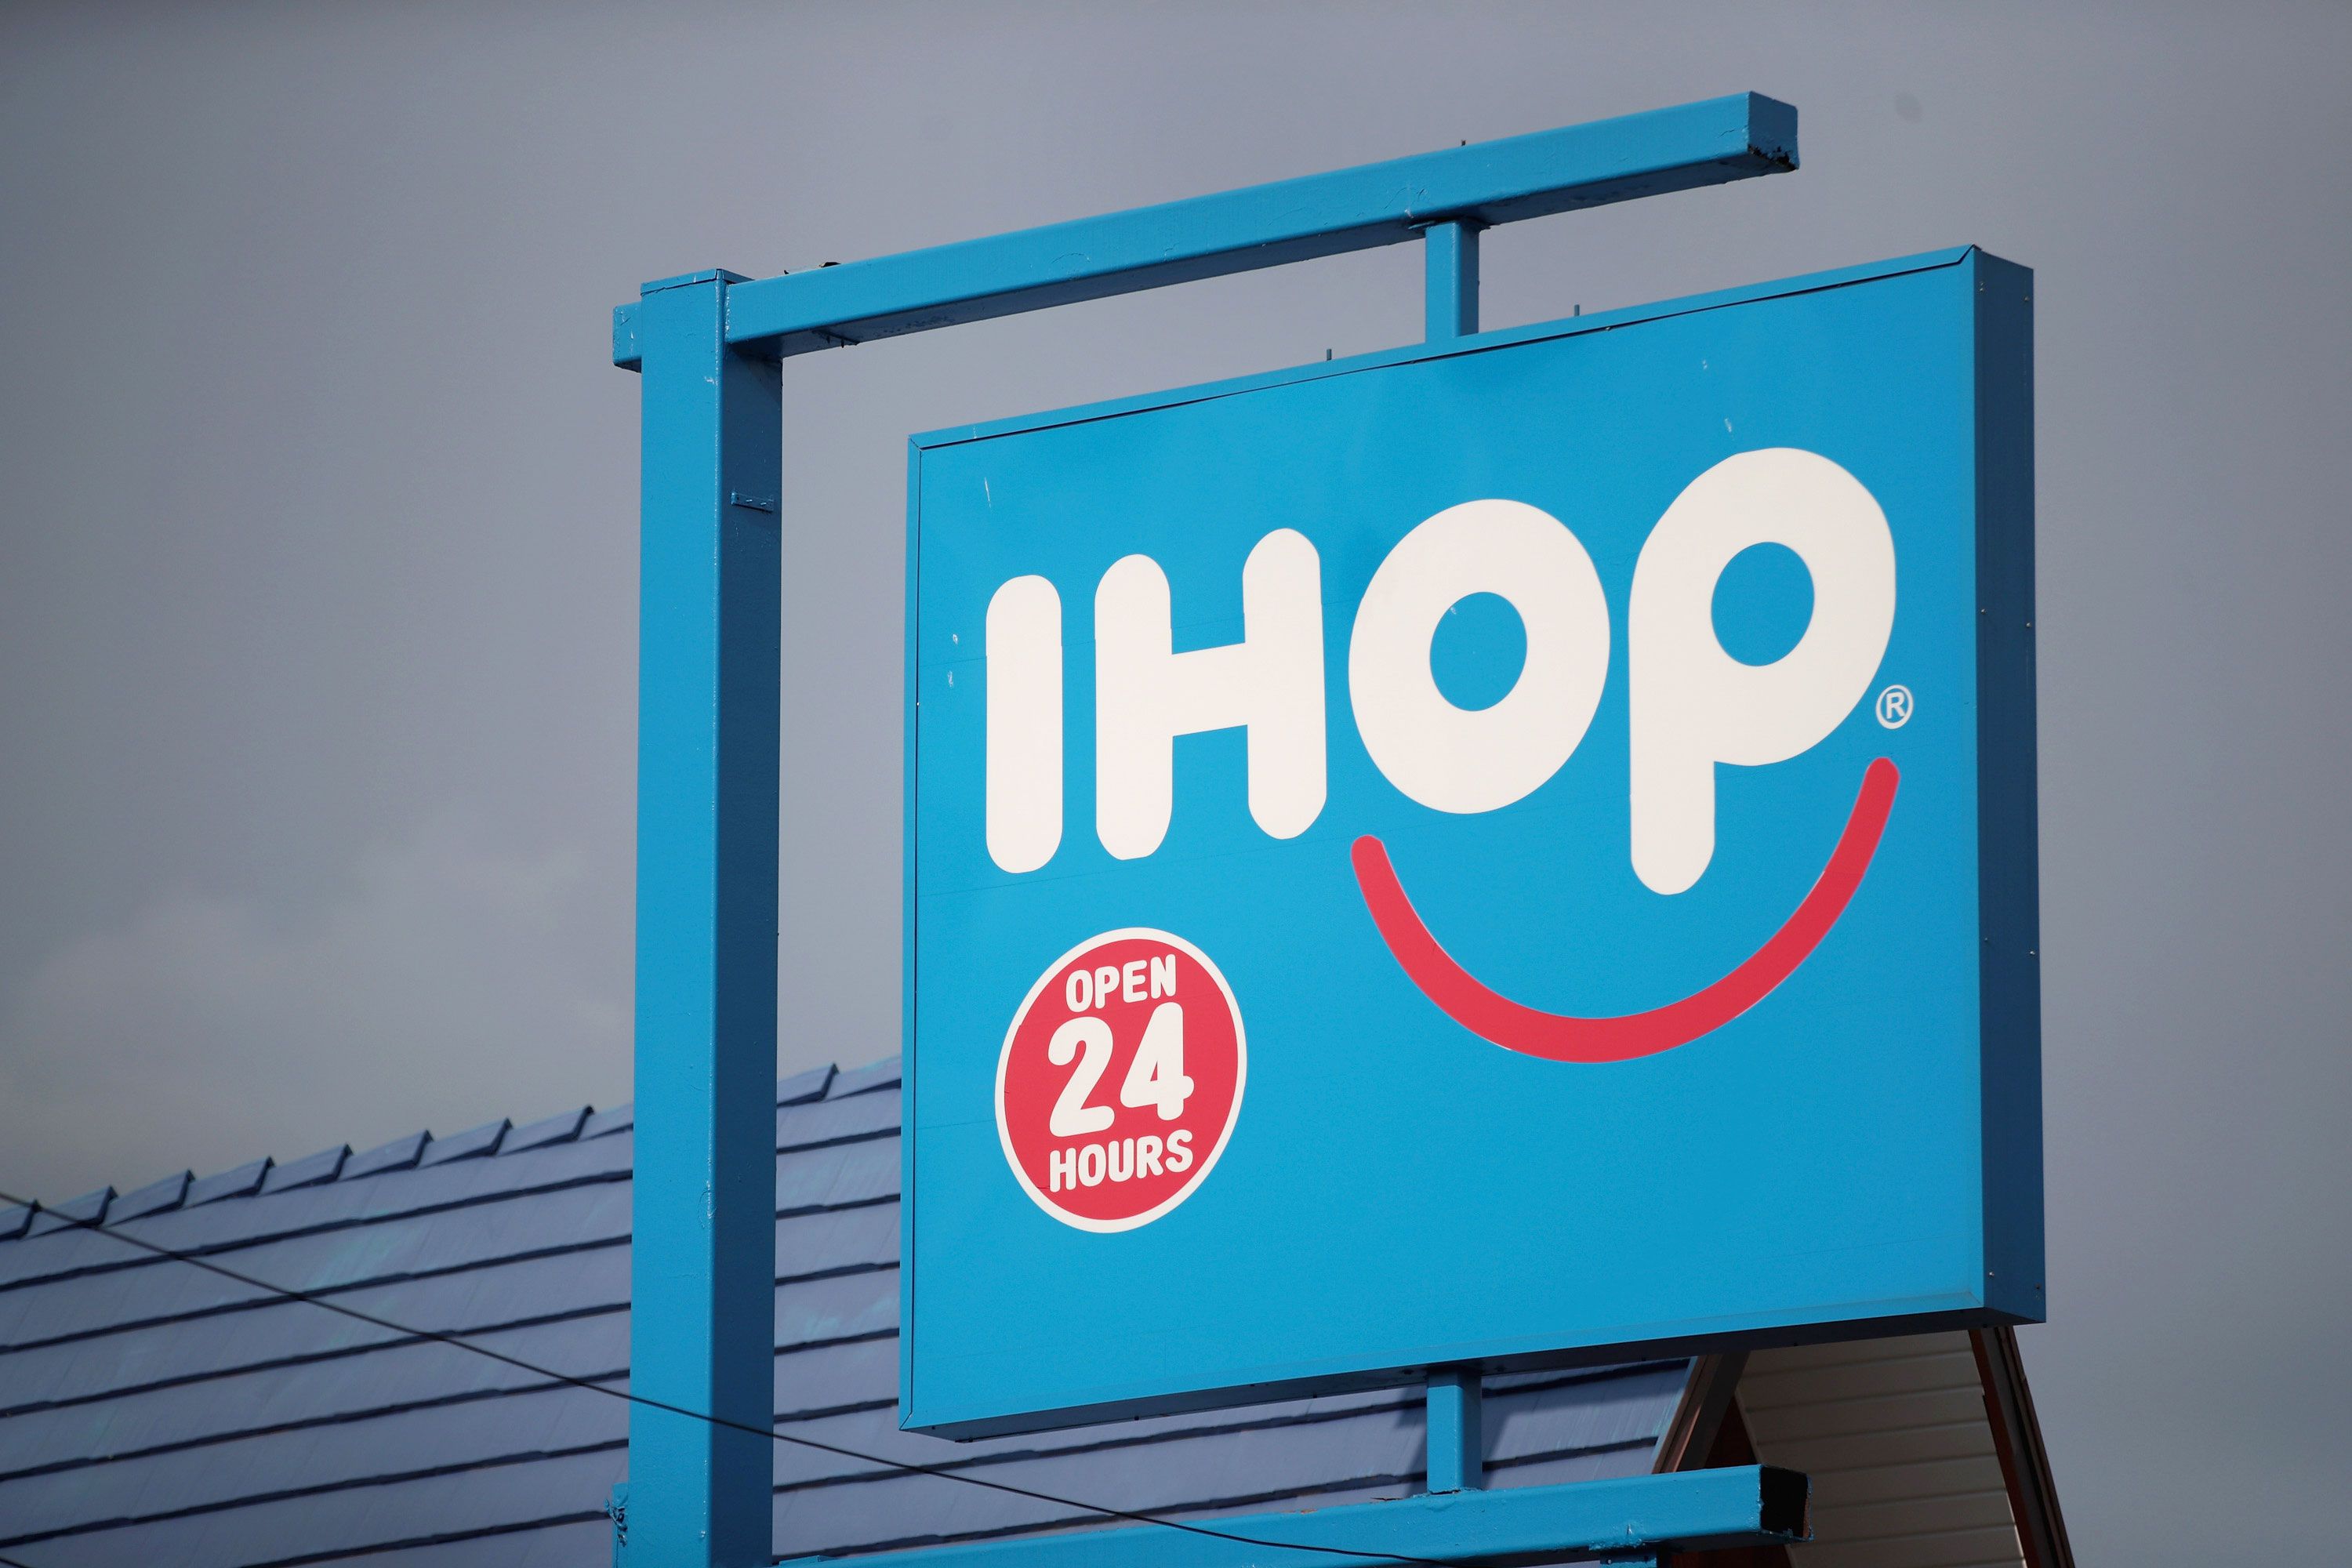 IHOP Flip'd Restaurant New York Opening Info